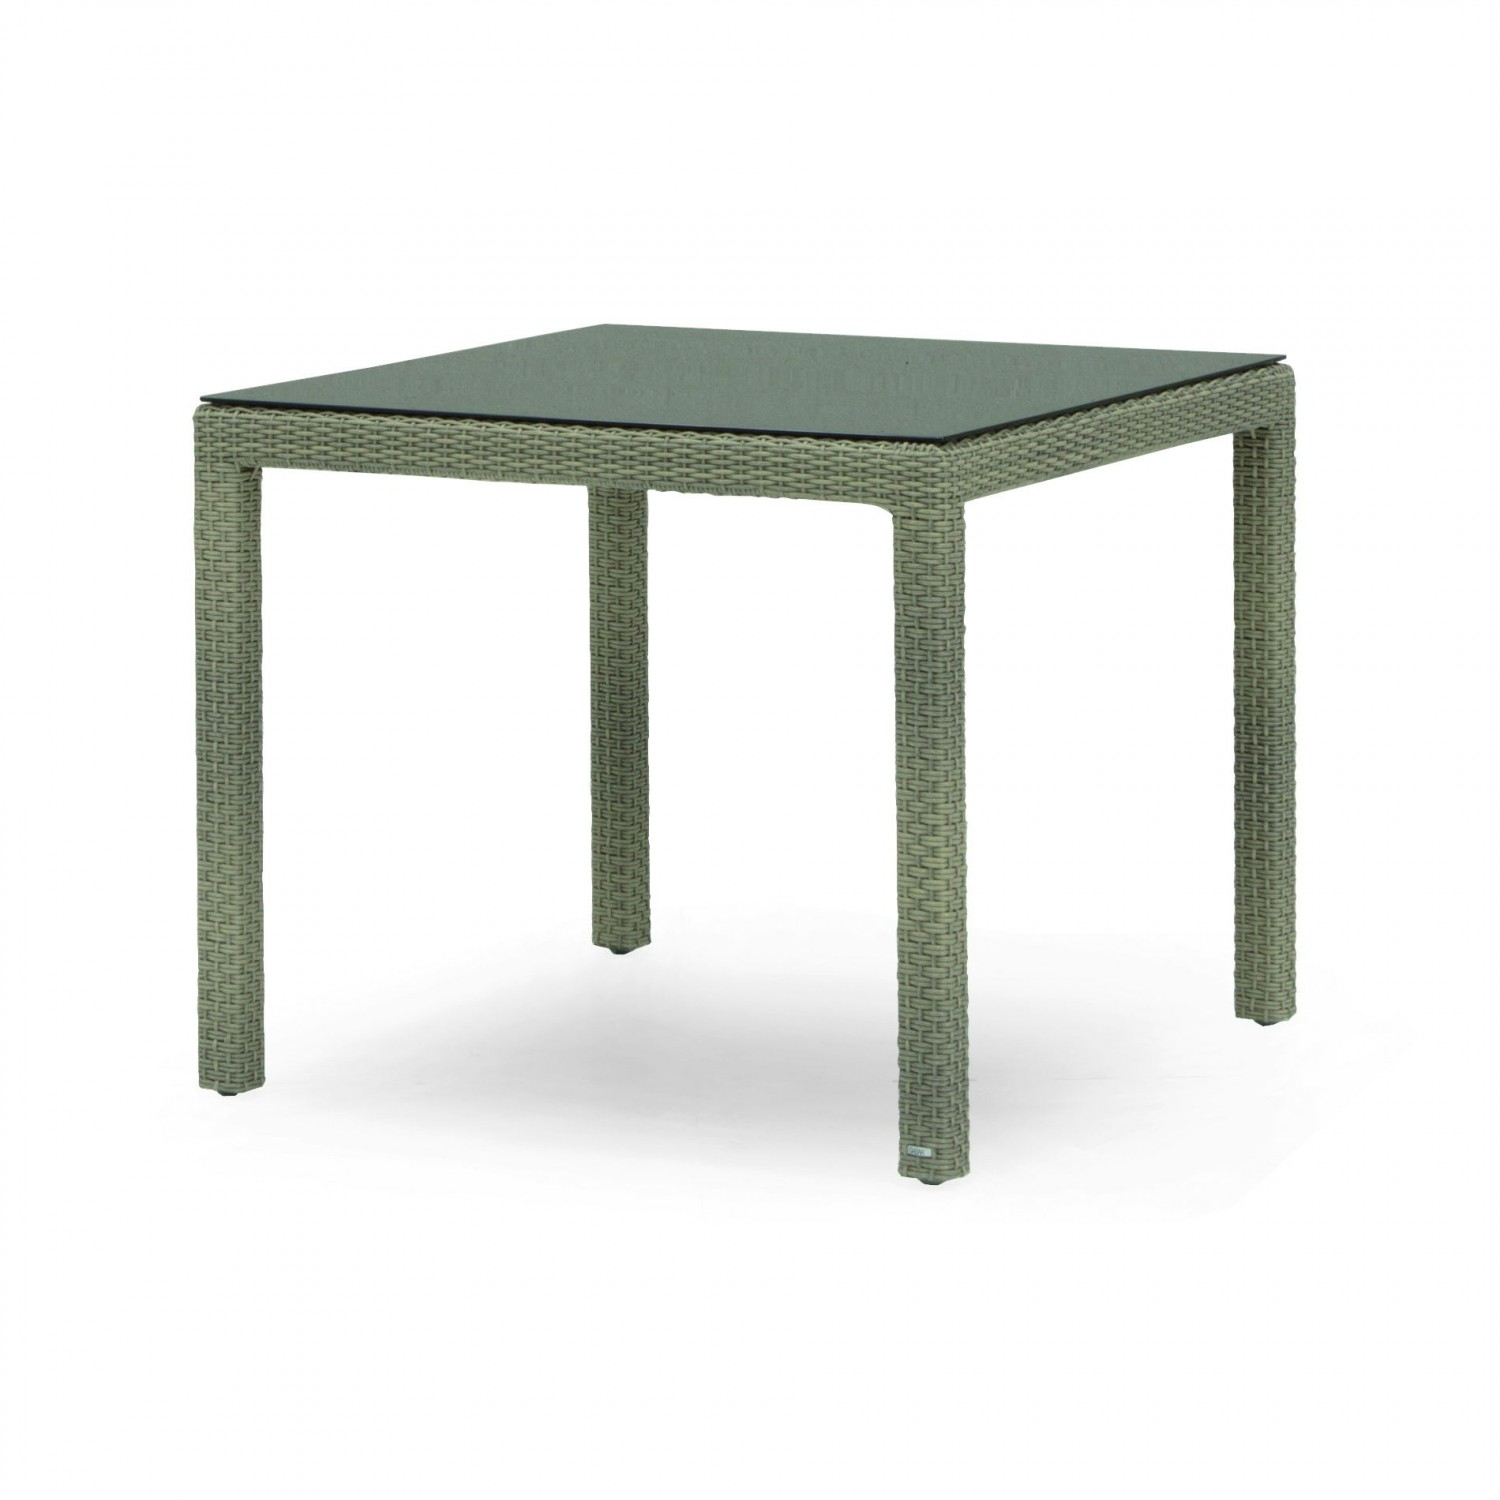 Table Exterieur Resine Table De Jardin Carrée En Aluminium Et Résine Tressée